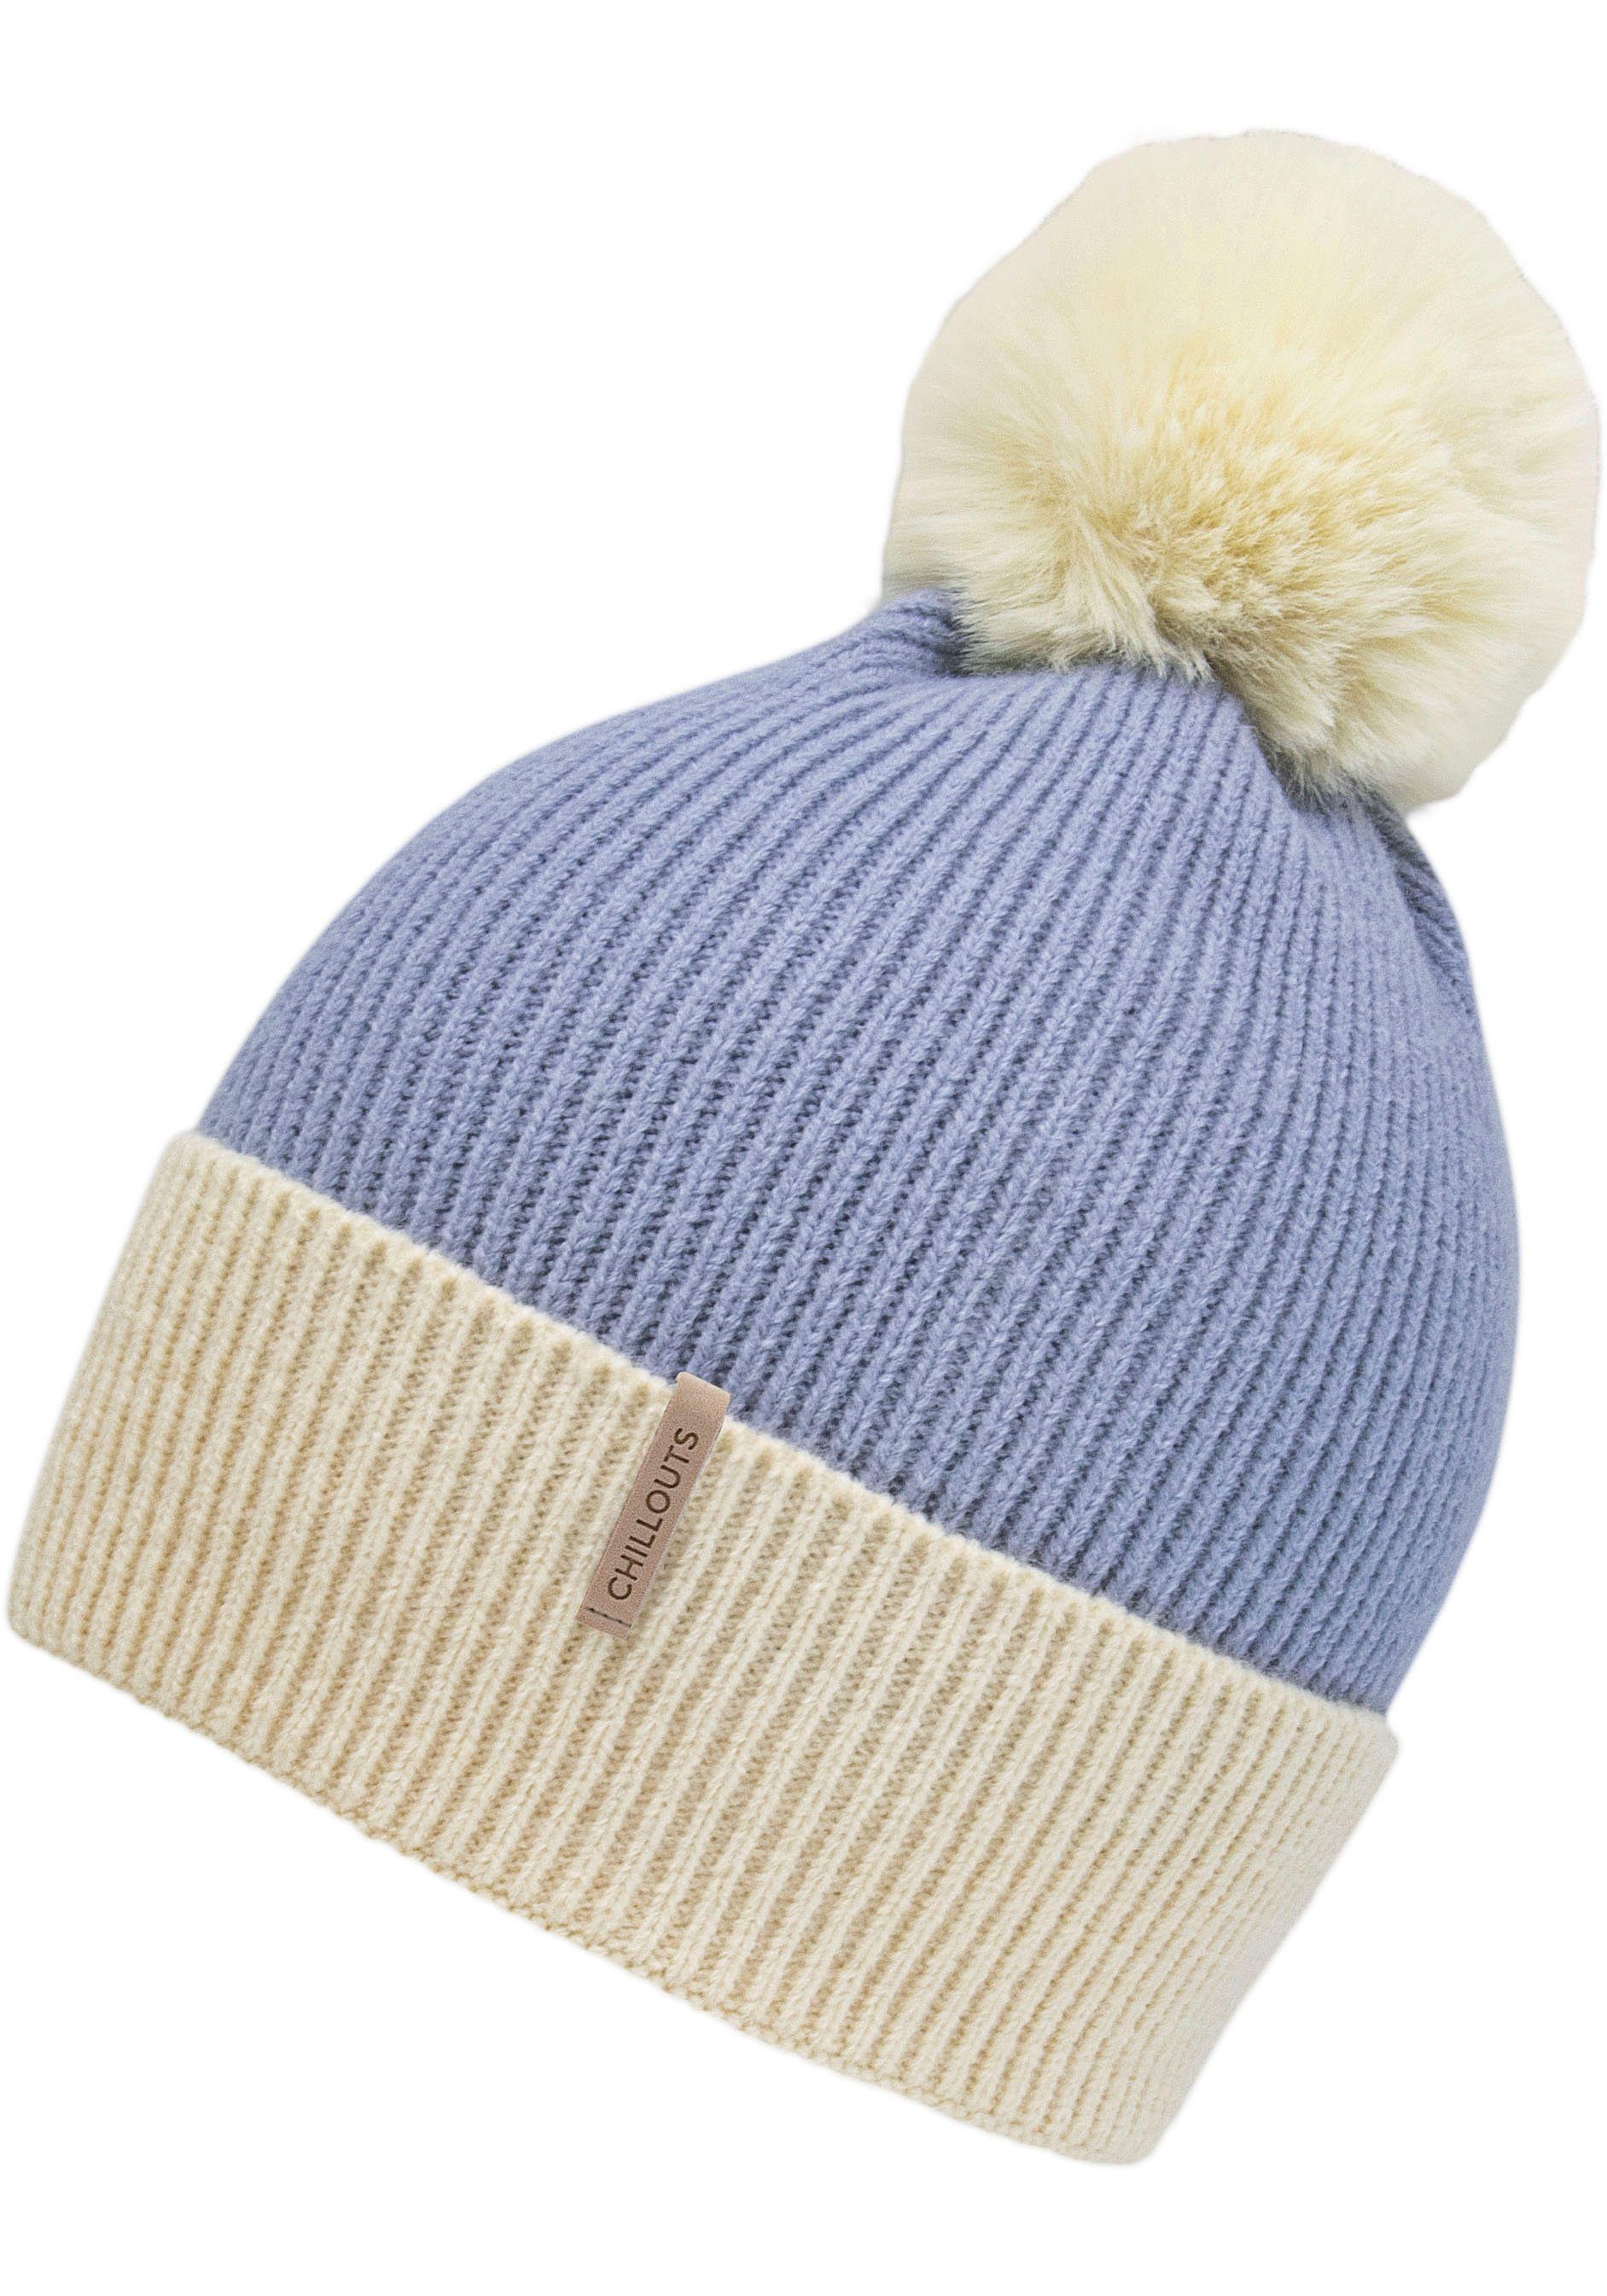 chillouts Bommelmütze Sandy Hat Perfekt kalte Jahreszeit blue die für